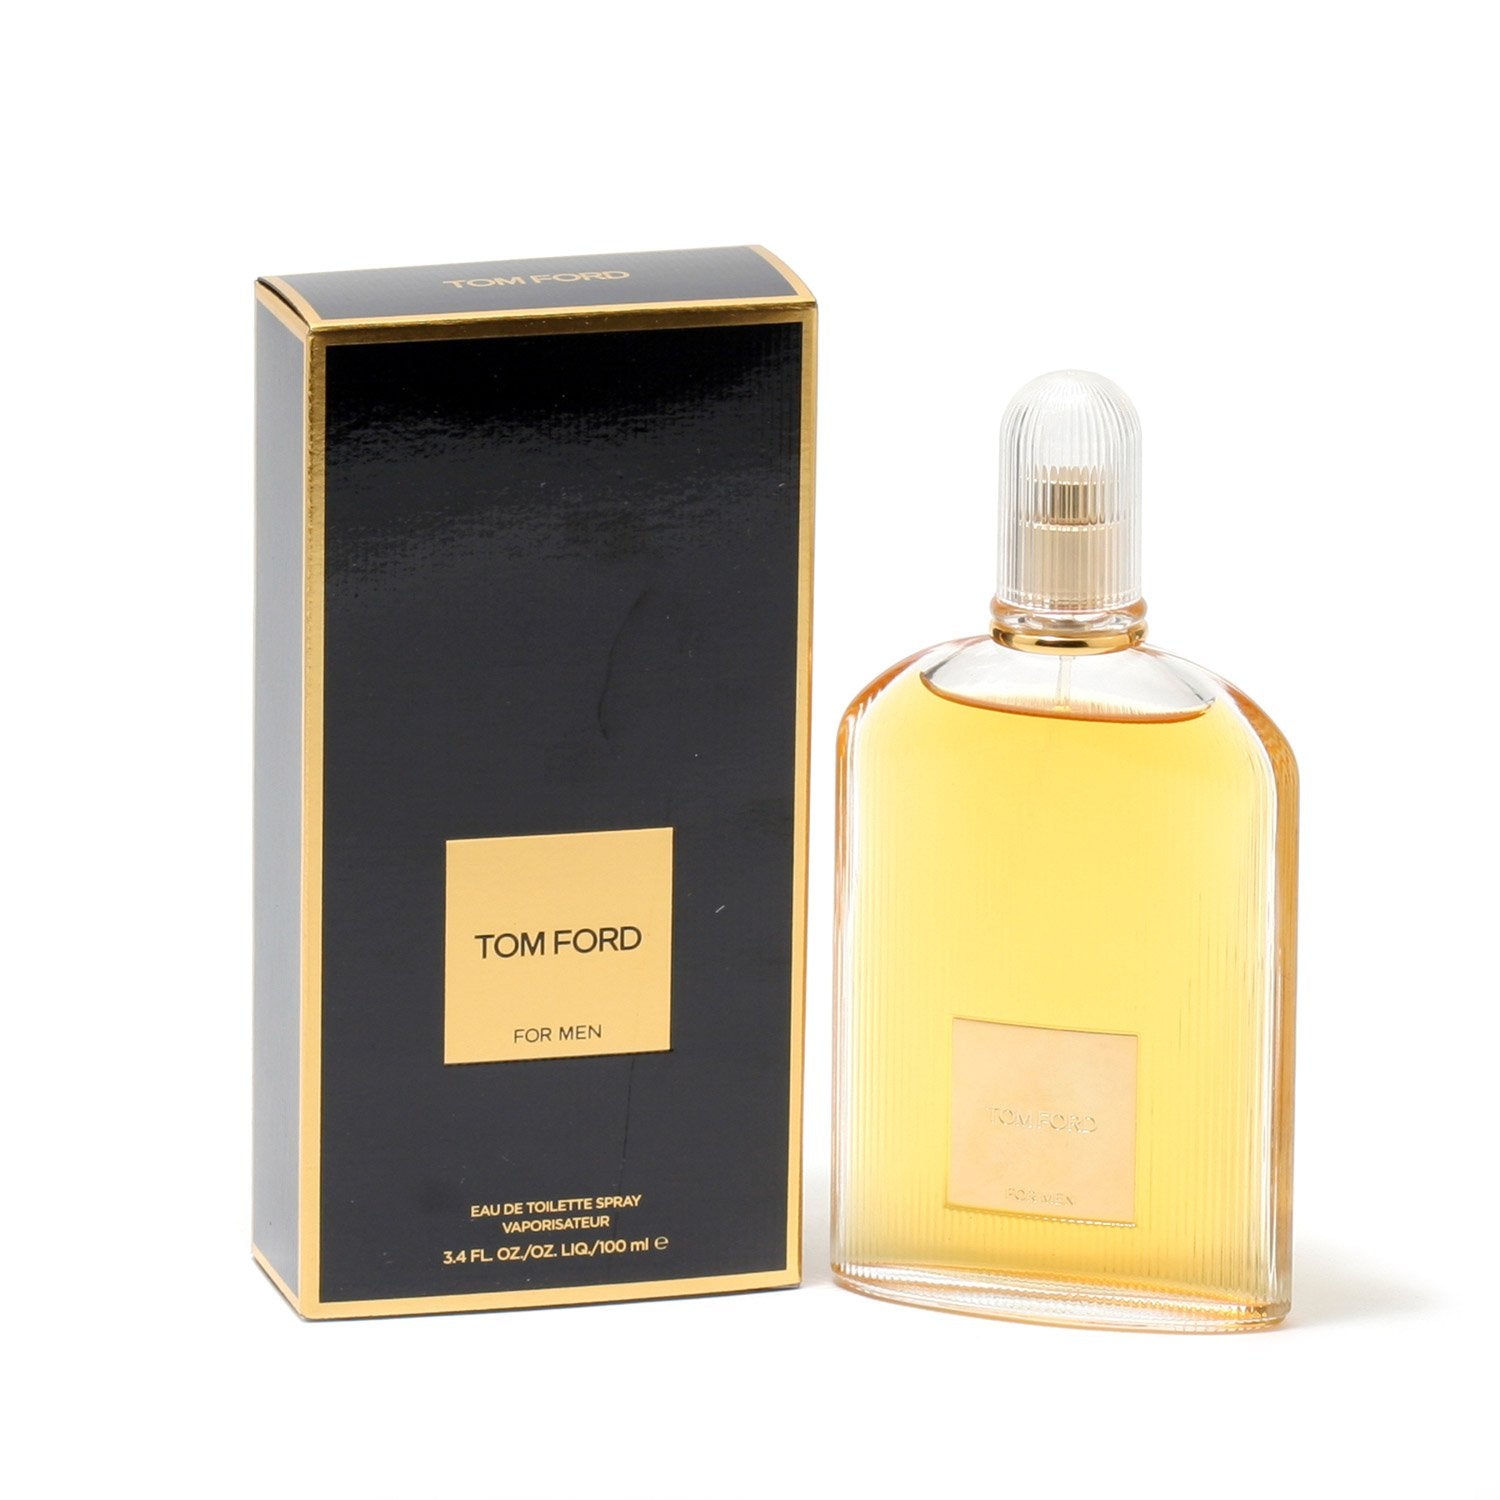 TOM FORD FOR MEN - EAU DE TOILETTE SPRAY,  OZ – Fragrance Room